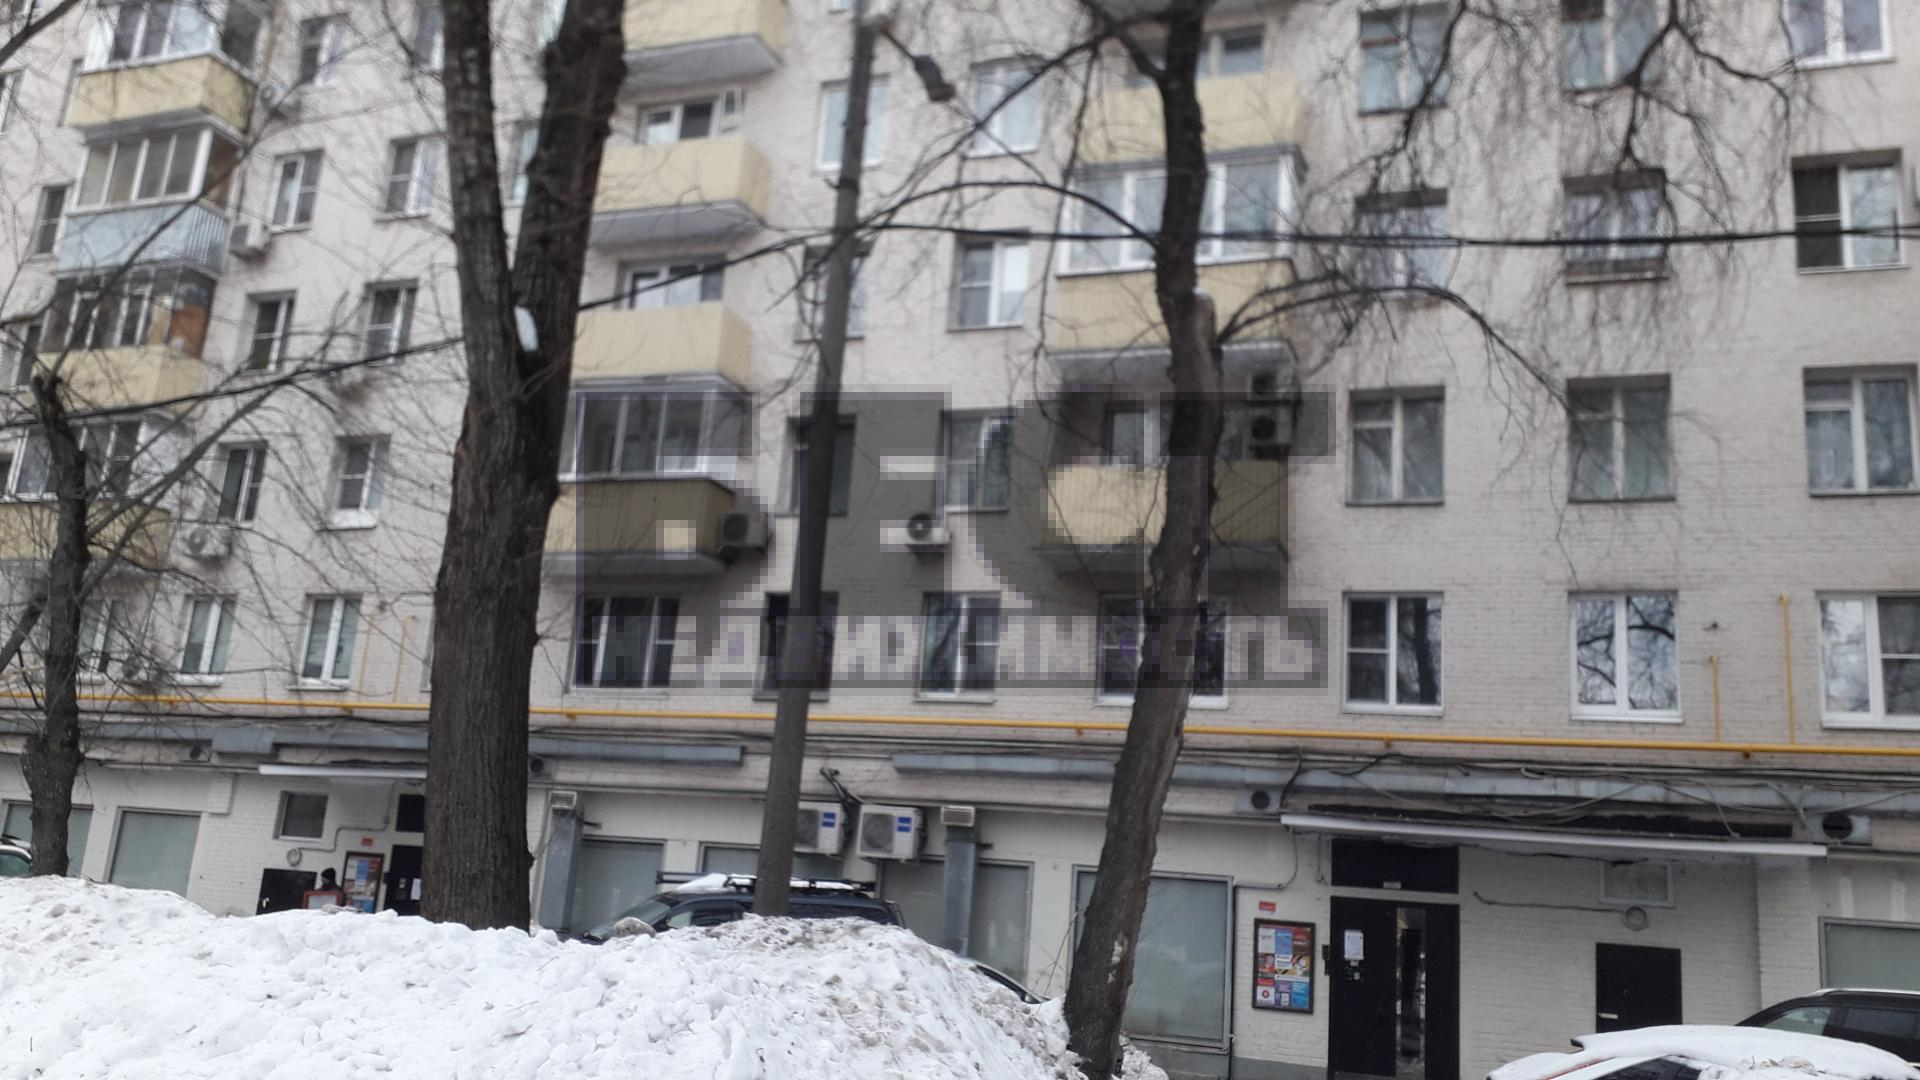 Продам квартиру в Москве по адресу Варшавское шоссе, 65к2, площадь 31 квм Недвижимость Москва (Россия) Продается очень светлая теплая уютная квартира